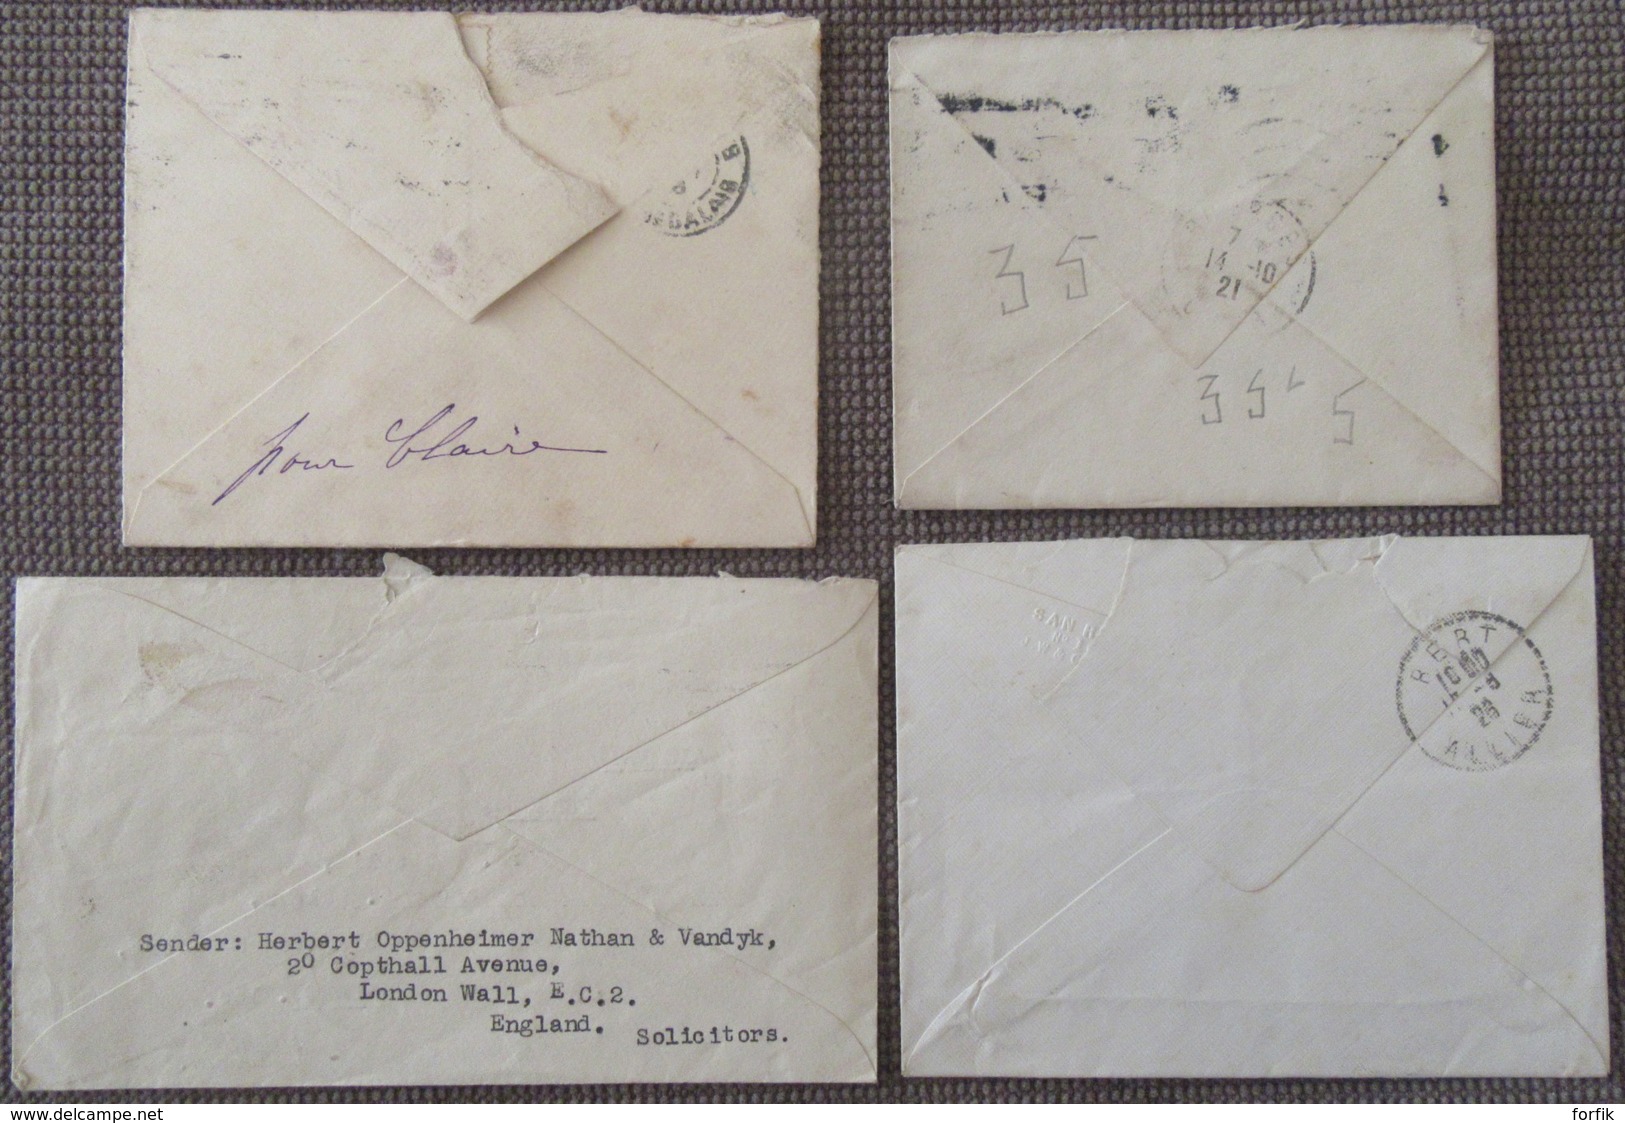 Grande-Bretagne - 20 Enveloppes dont entiers postaux, EMA, timbres, etc... - 1881 environ à 1954 - à étudier